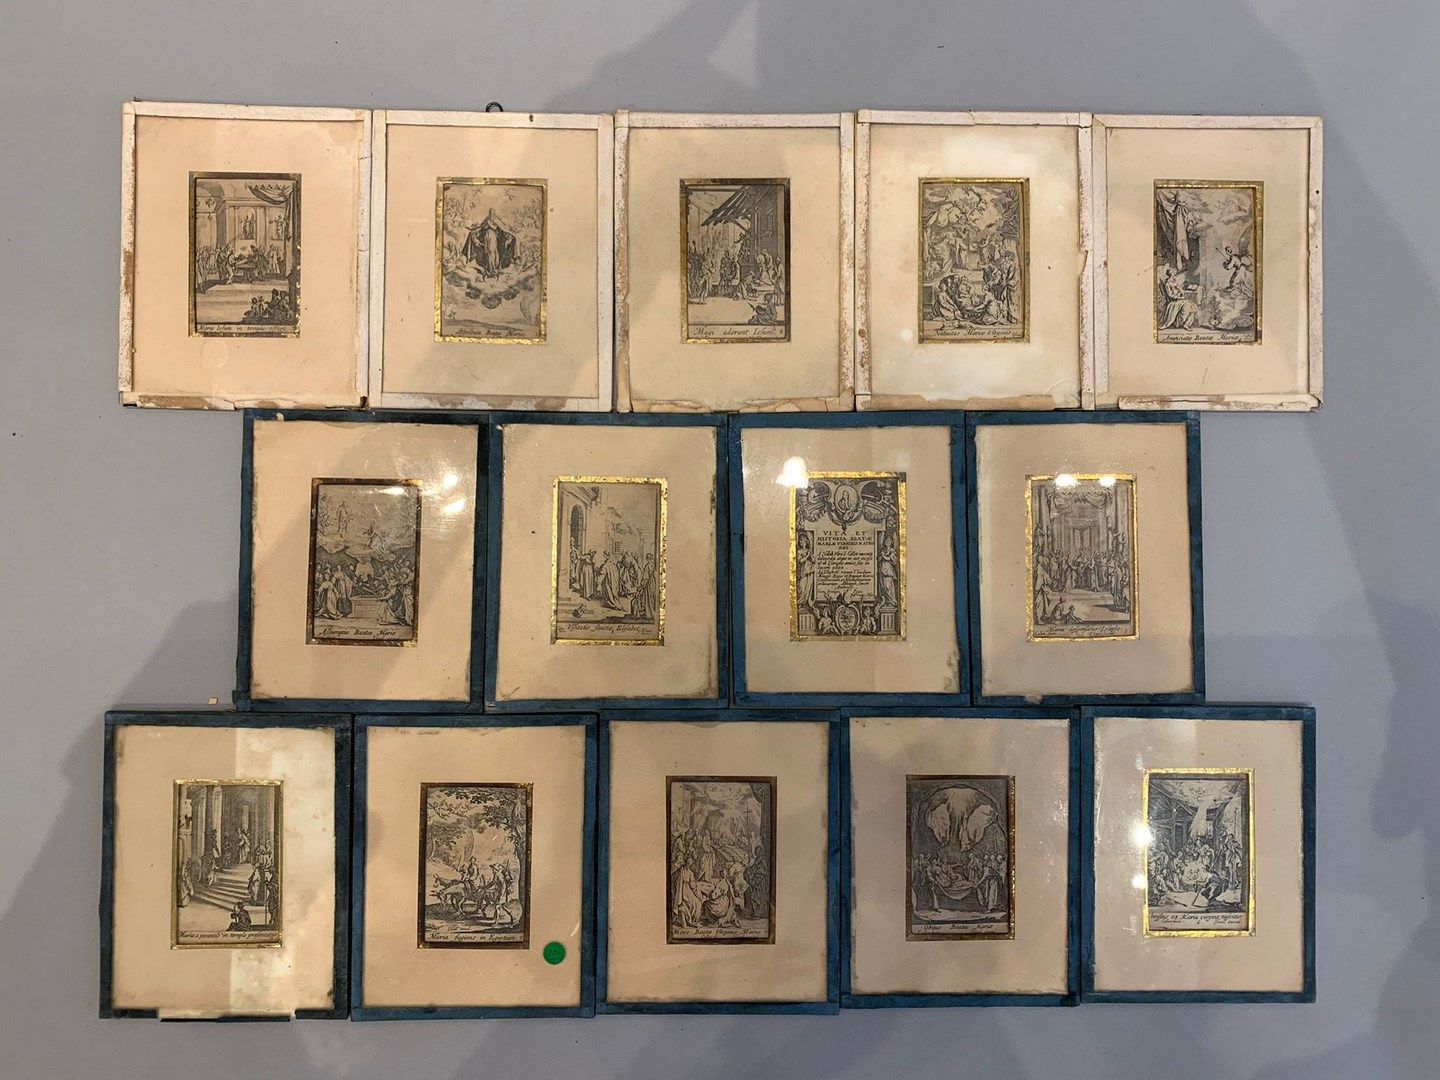 Null 雅克-卡洛 (1592-1635)
圣母的生活》。
14张系列蚀刻版。用数字和以色列的赞美来证明最终的状态很好。 
发黄和污渍，在标题下或艺术家的名字&hellip;